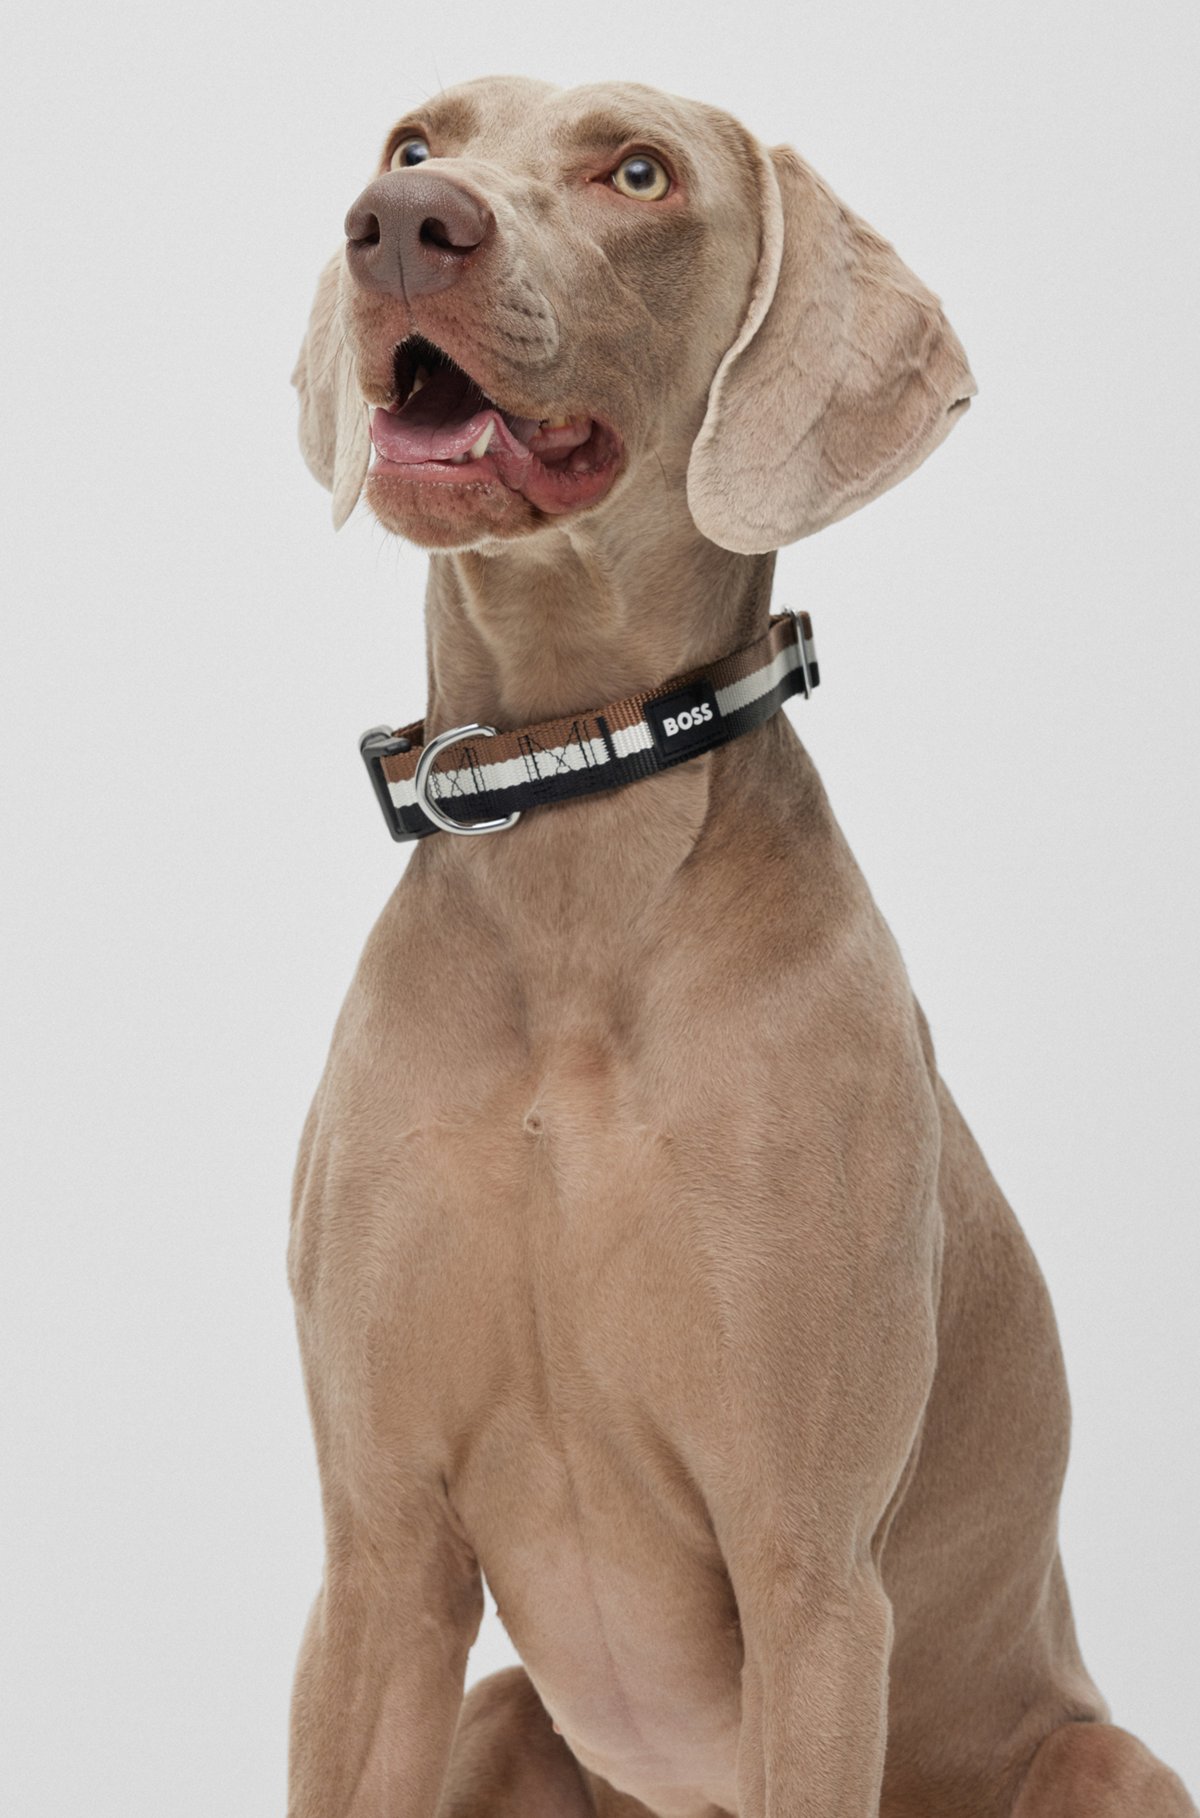 Halsband voor honden met siliconen logopatch, Zwart